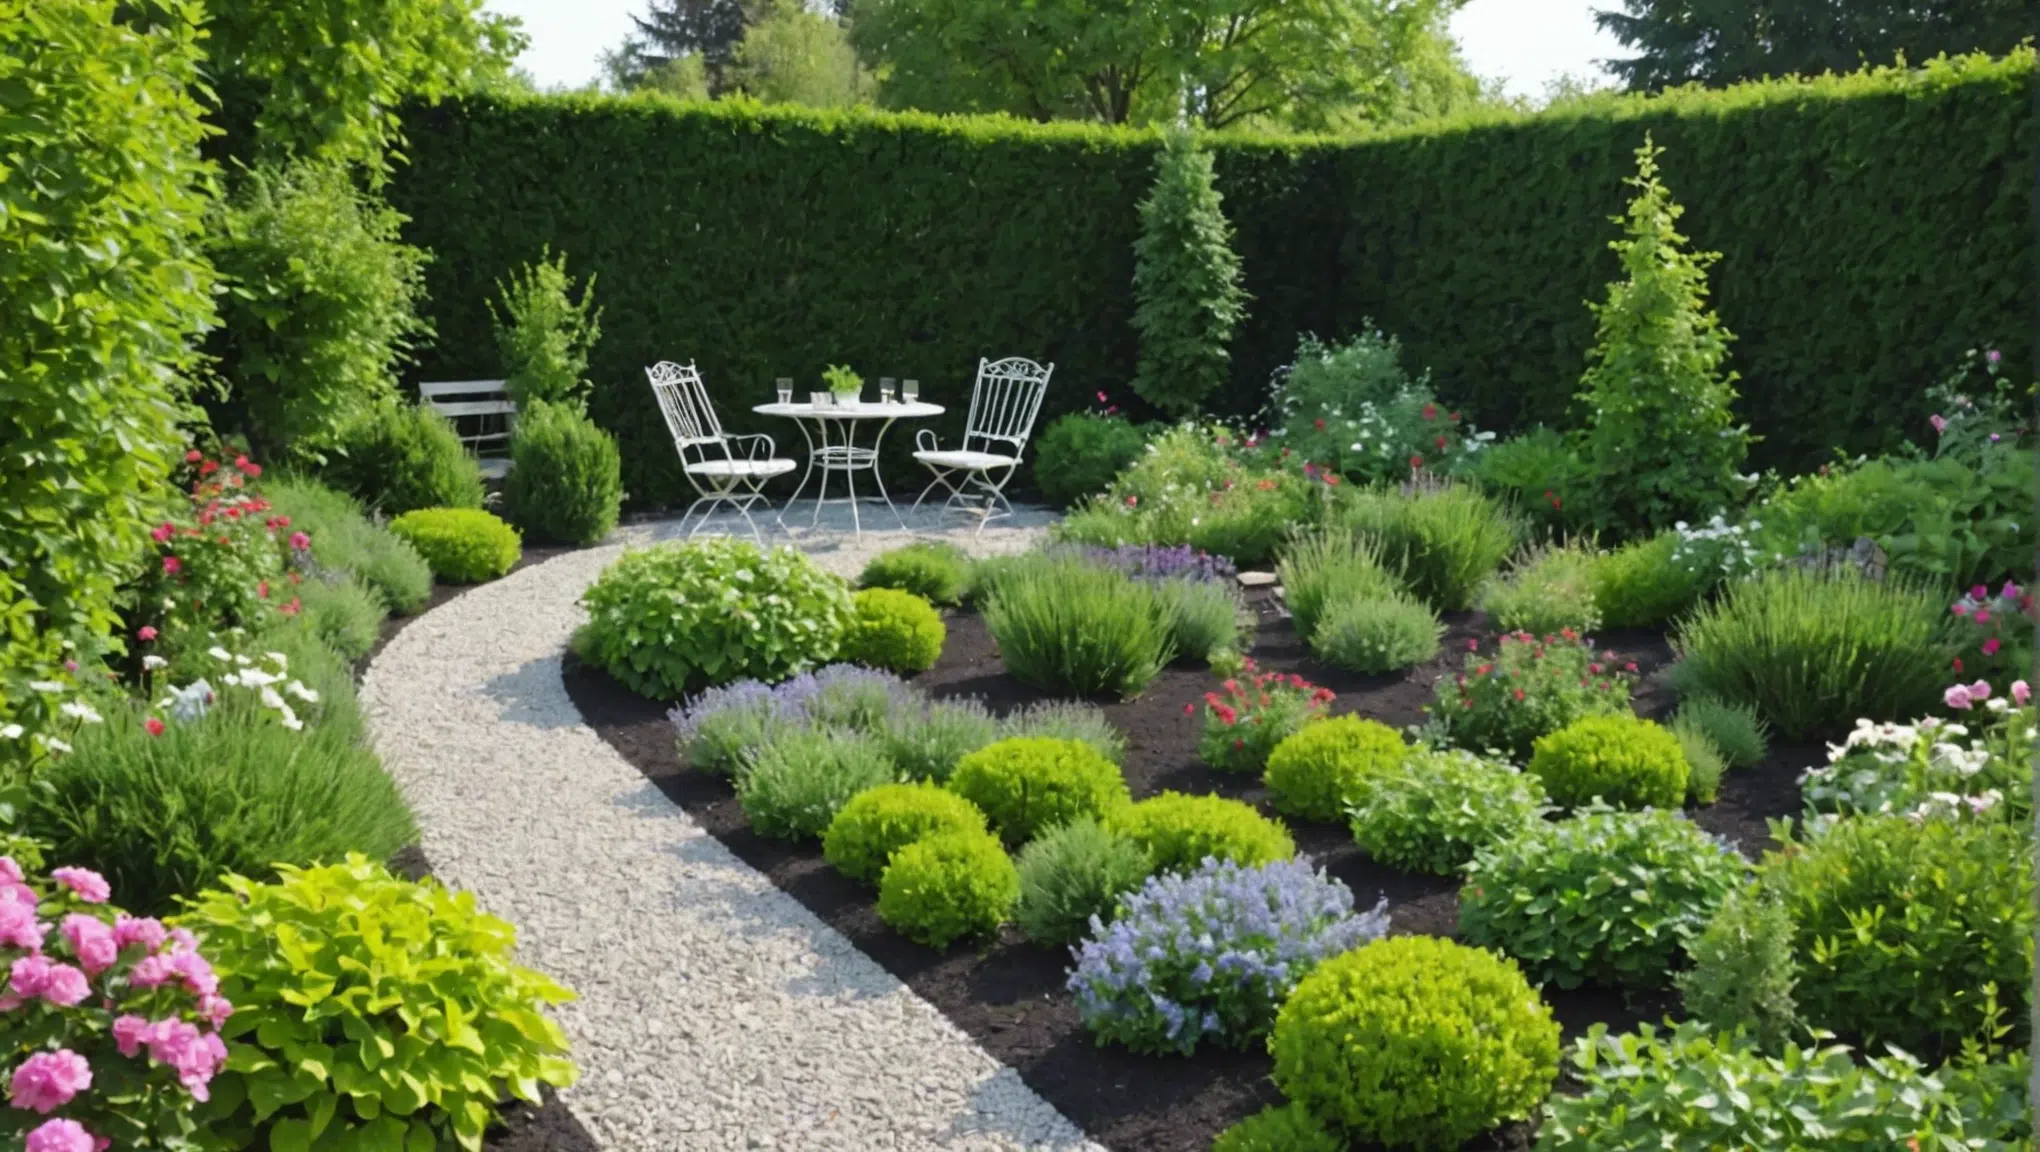 découvrez comment métamorphoser votre petit jardin en un splendide paradis champêtre en un clin d'œil avec nos précieux conseils de jardinage.